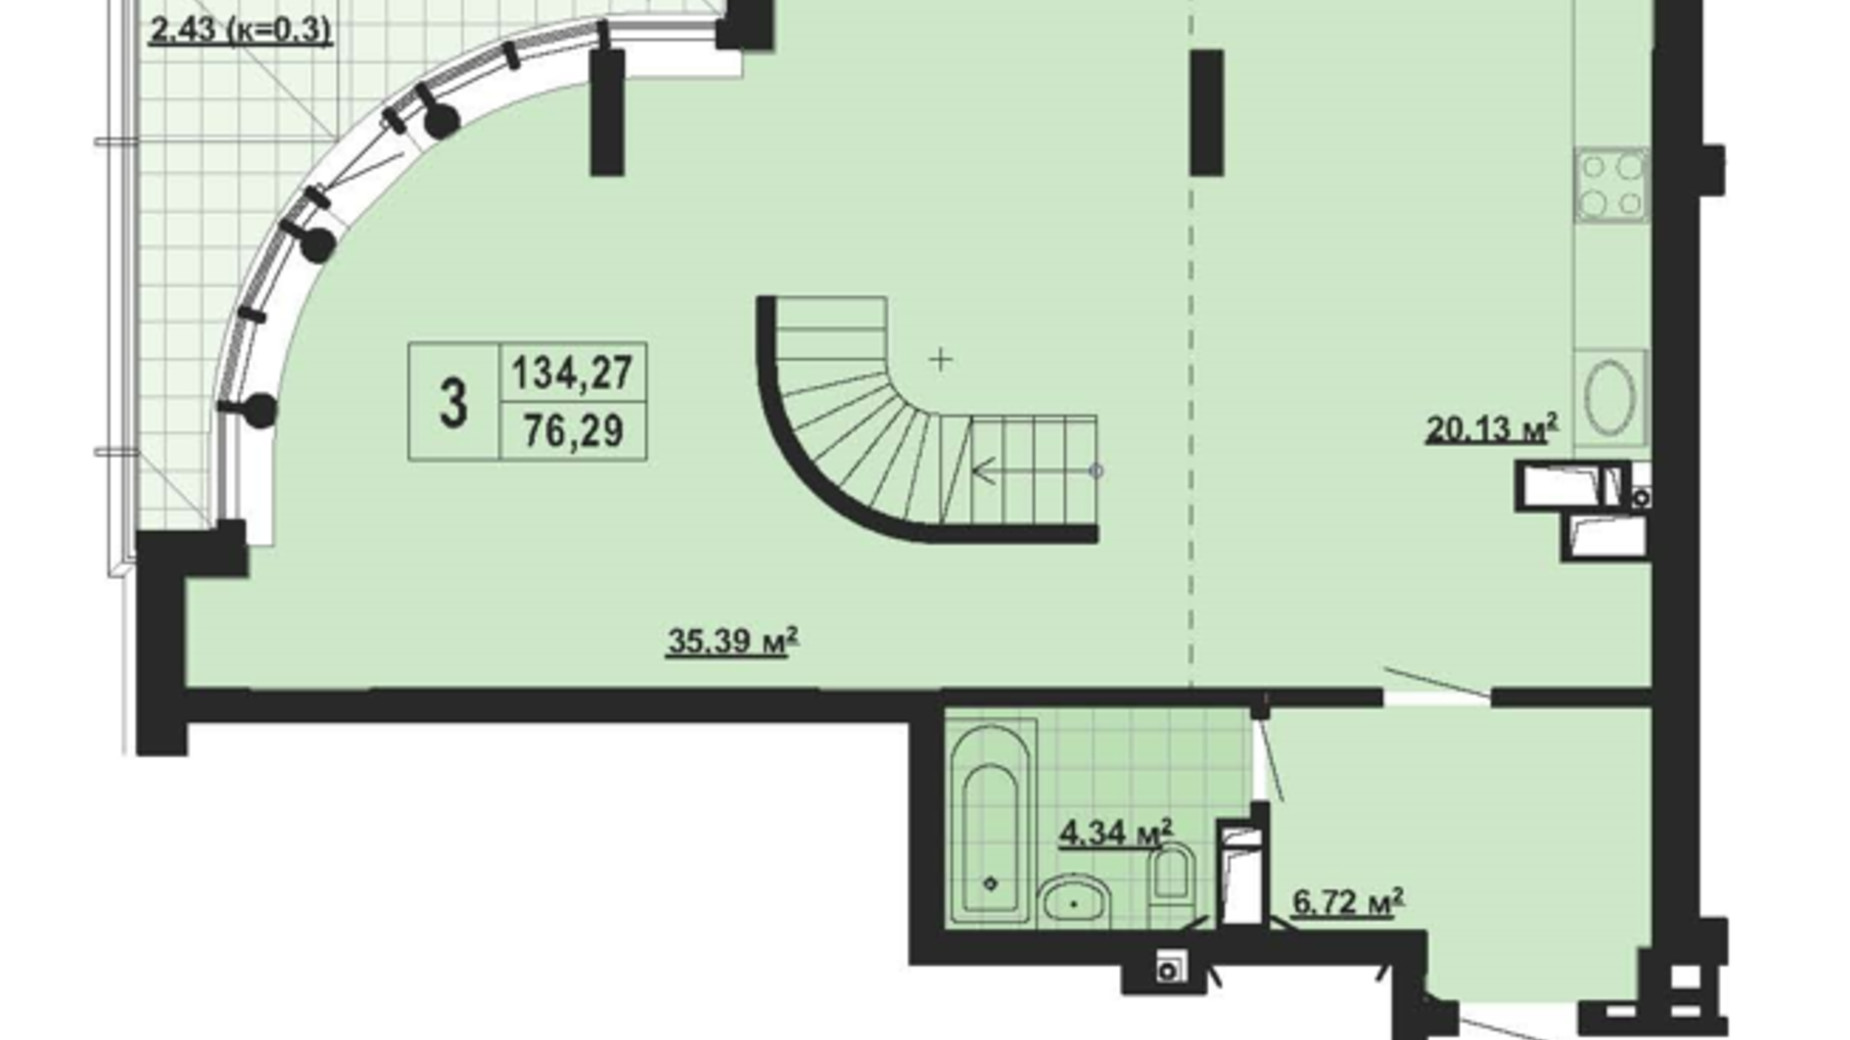 Планировка много­уровневой квартиры в ЖК Парковый Город 134.27 м², фото 650578